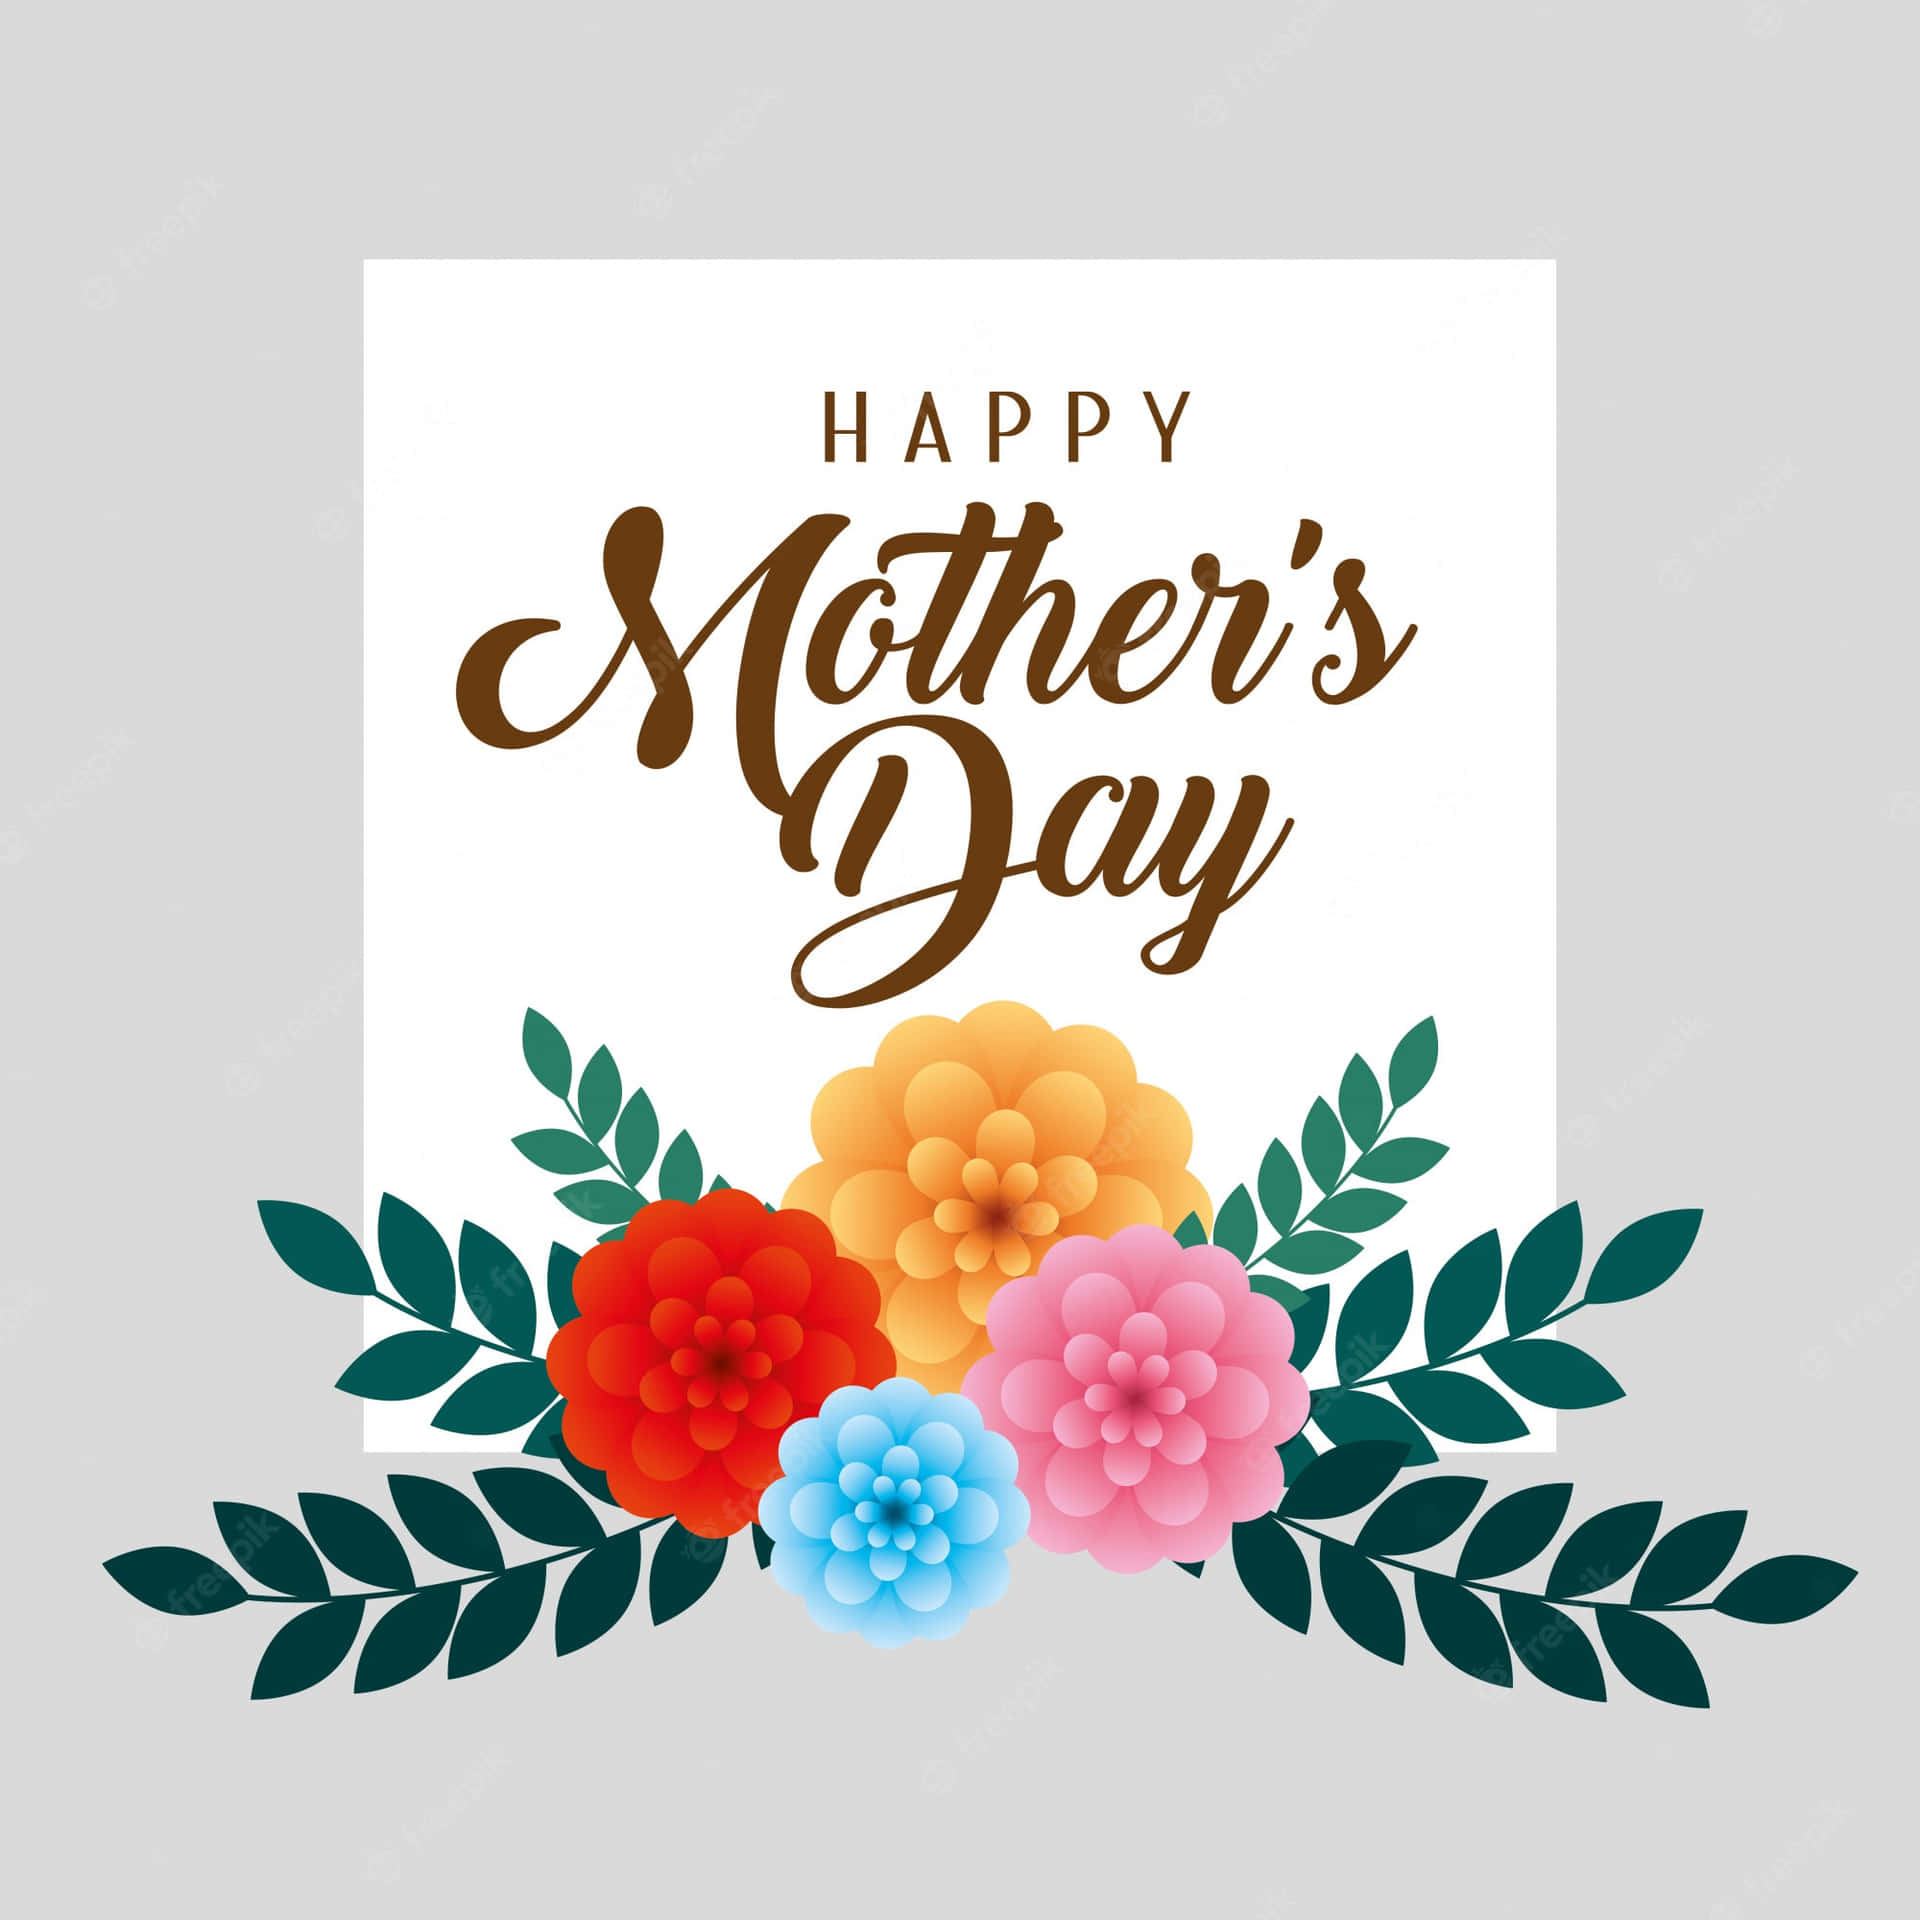 Cartãode Felicitações Do Dia Das Mães Com Flores E Folhas. Papel de Parede